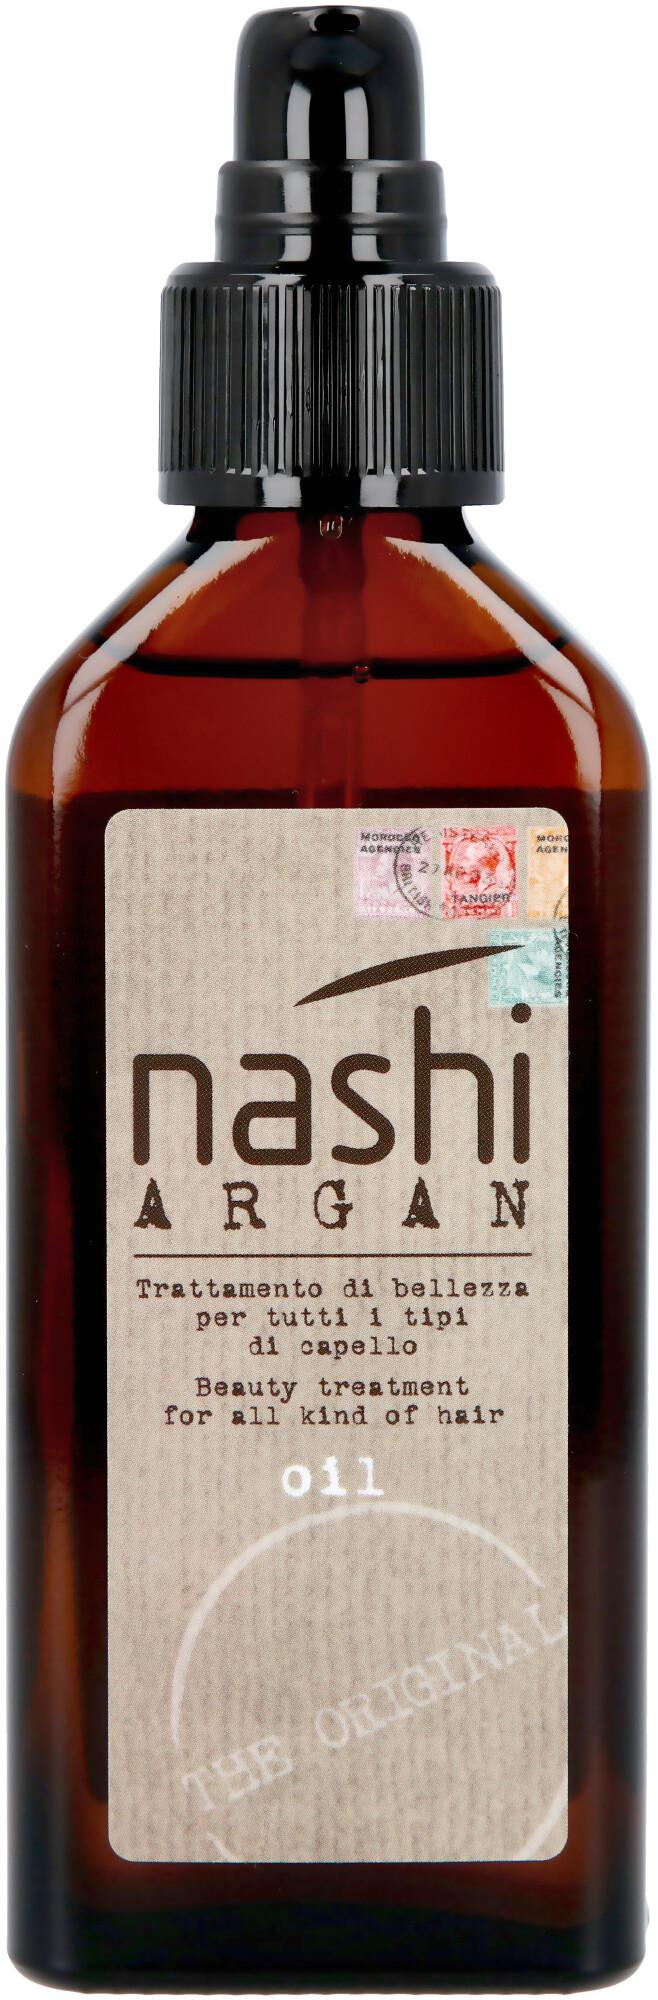 gdzie kupic olejek do włosów nashi argan